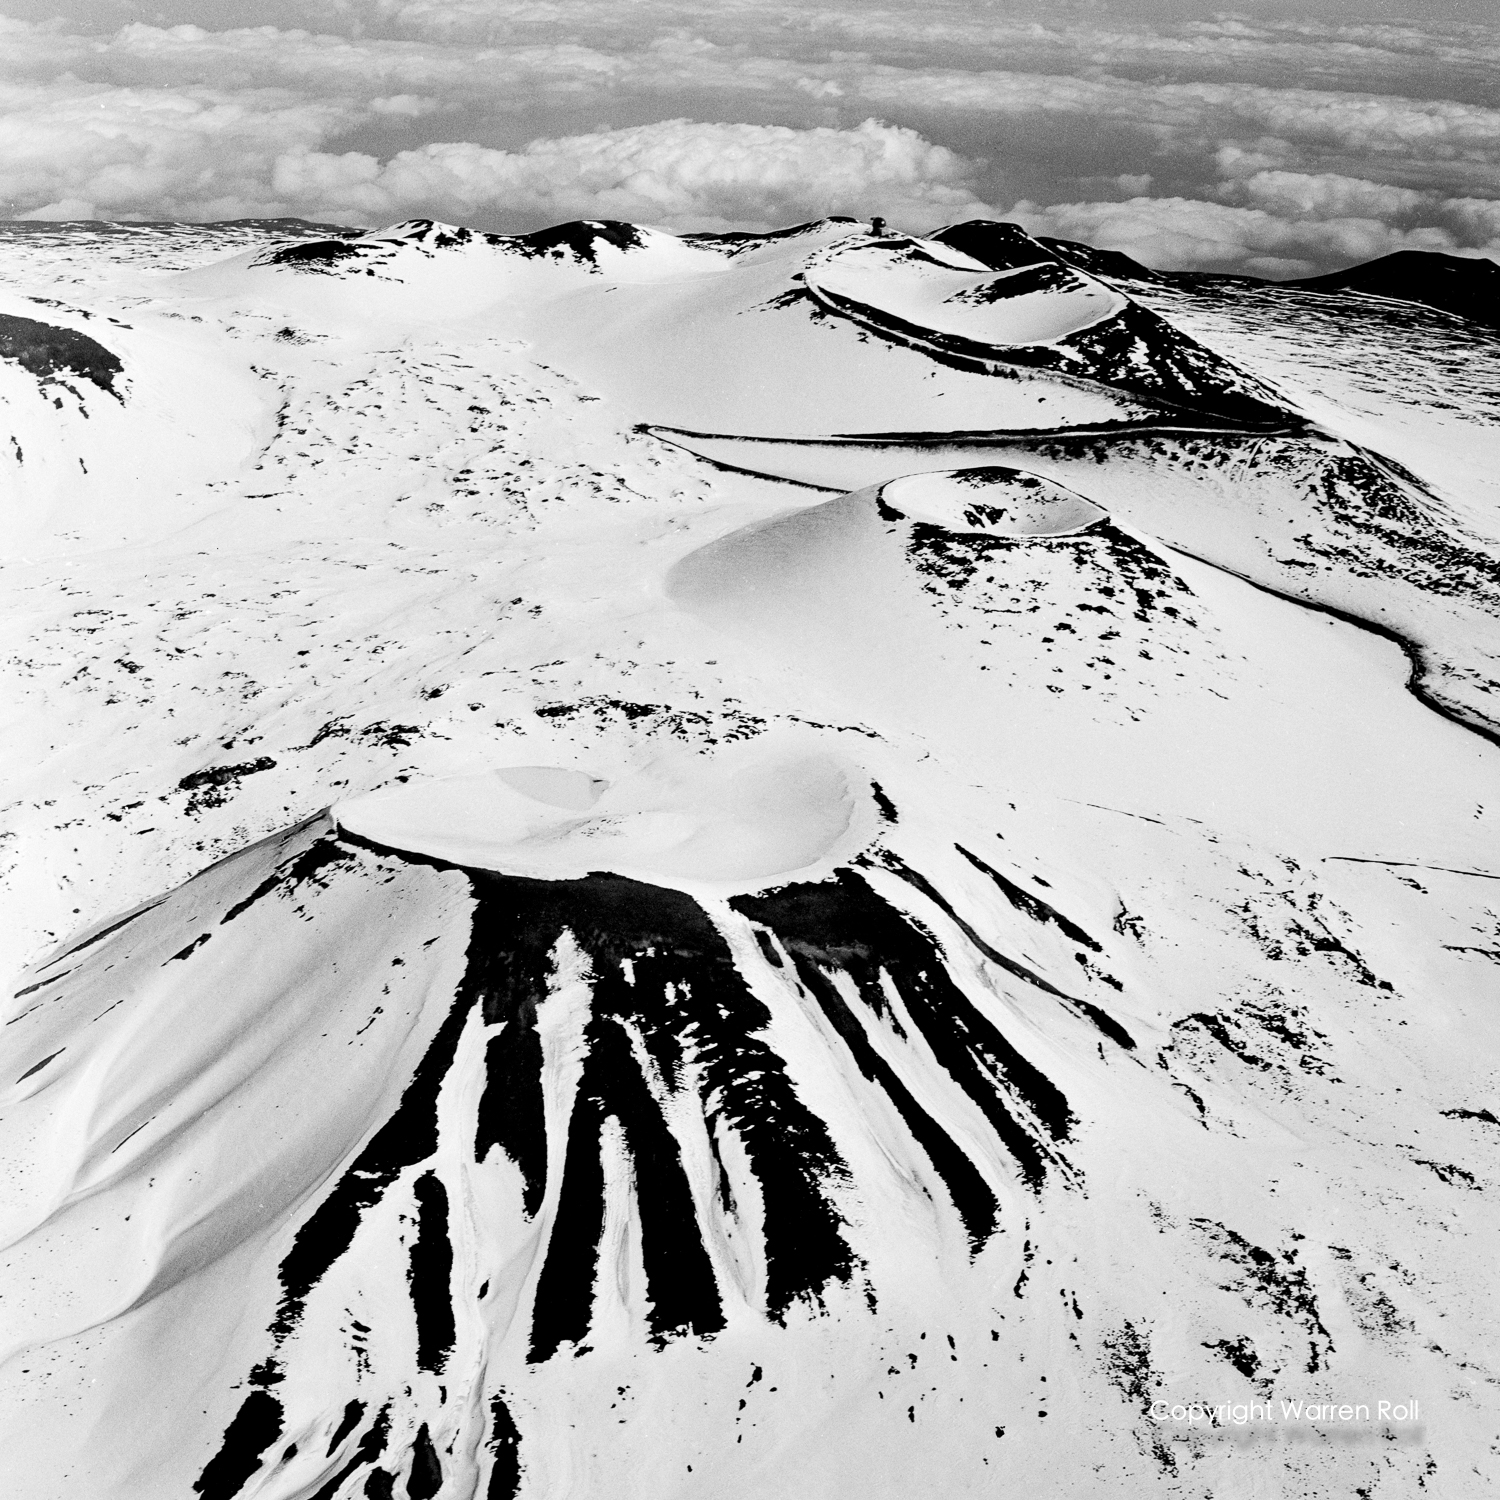 Mauna Kea Summit 1968 taken by Warren Roll/Star-Bulletin 